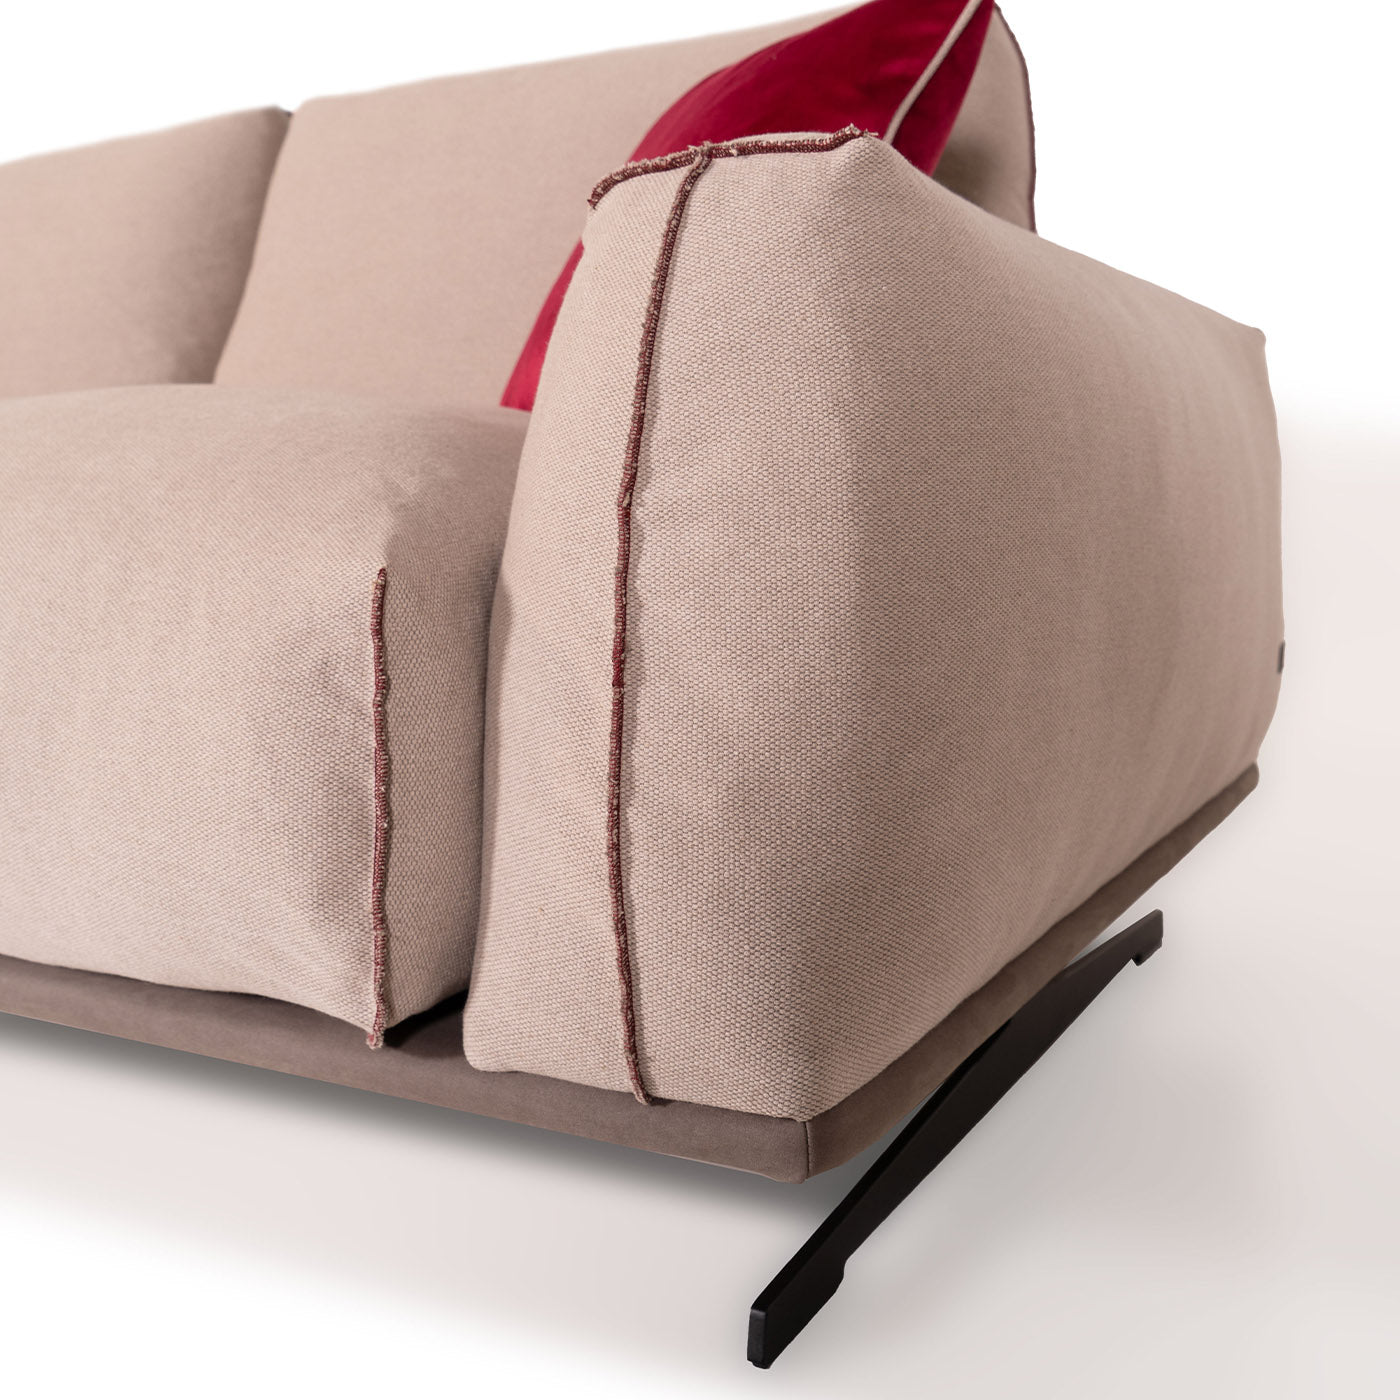 Boboli 2-sitzer-sofa von Marco und Giulio Mantellassi - Alternative Ansicht 3